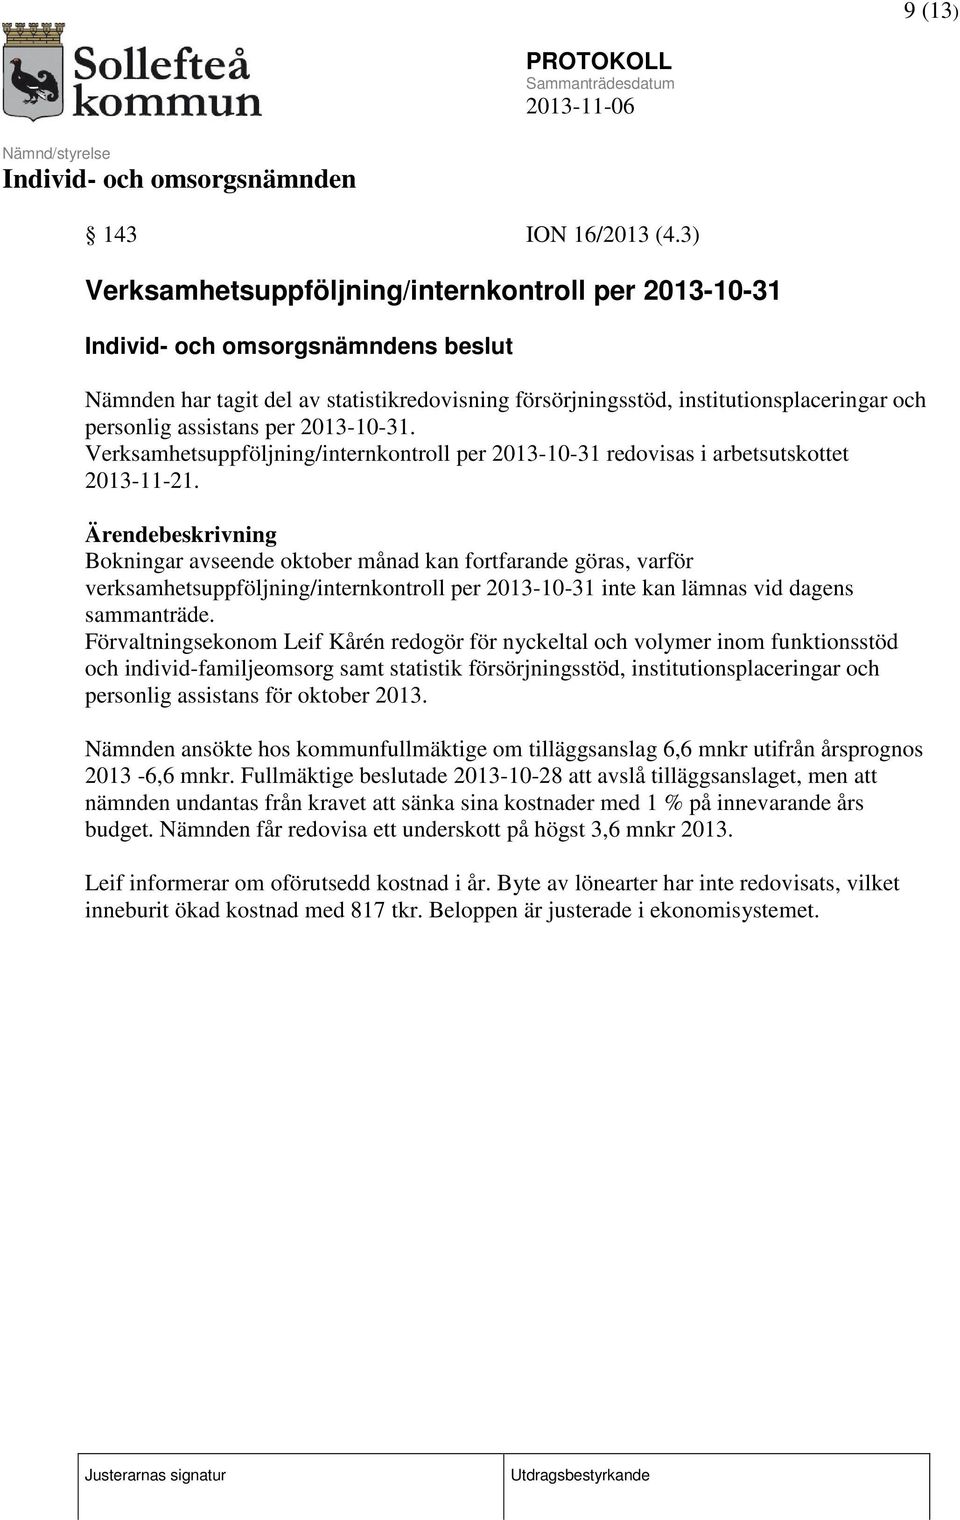 Verksamhetsuppföljning/internkontroll per 2013-10-31 redovisas i arbetsutskottet 2013-11-21.